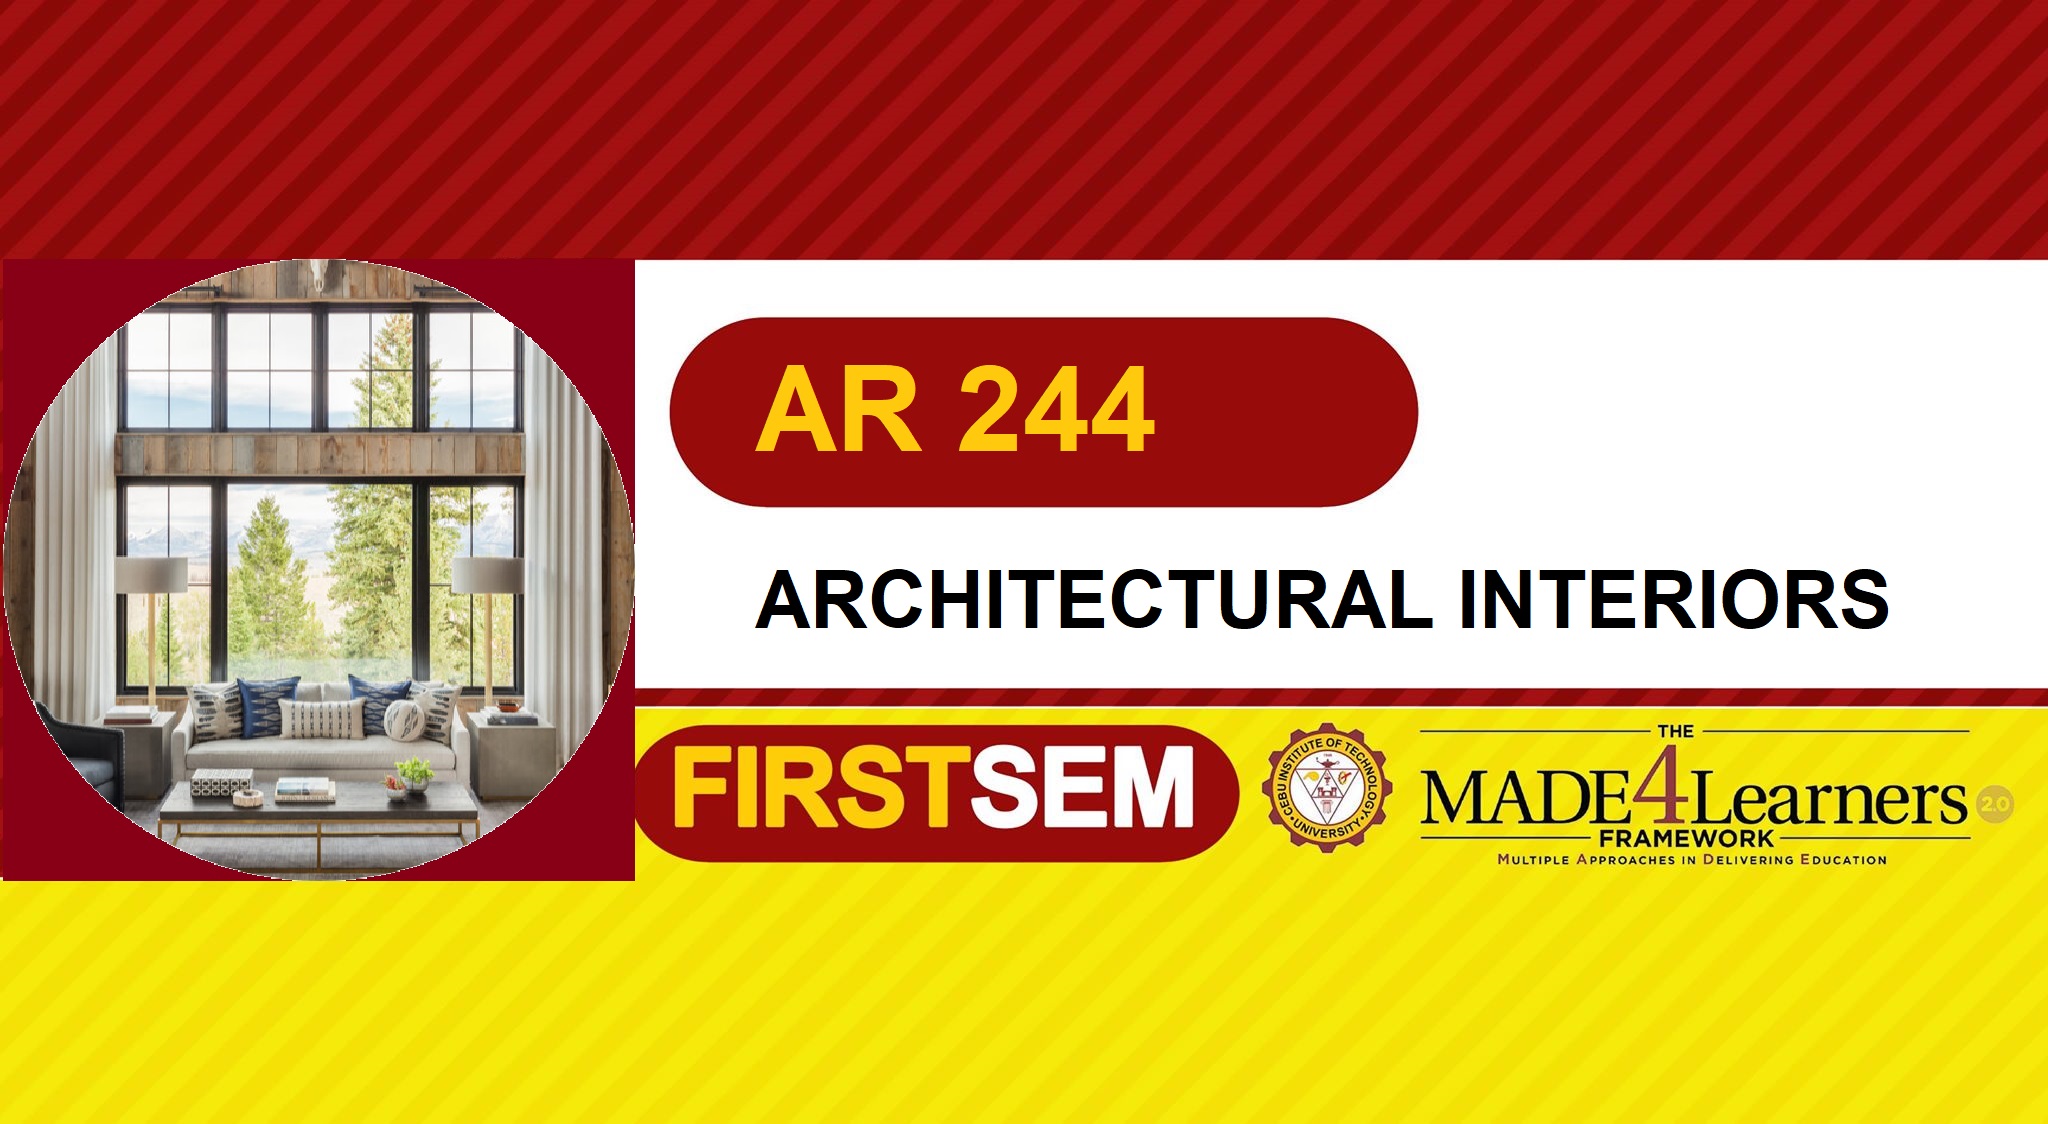 AR 244: ARCHITECTURAL INTERIORS